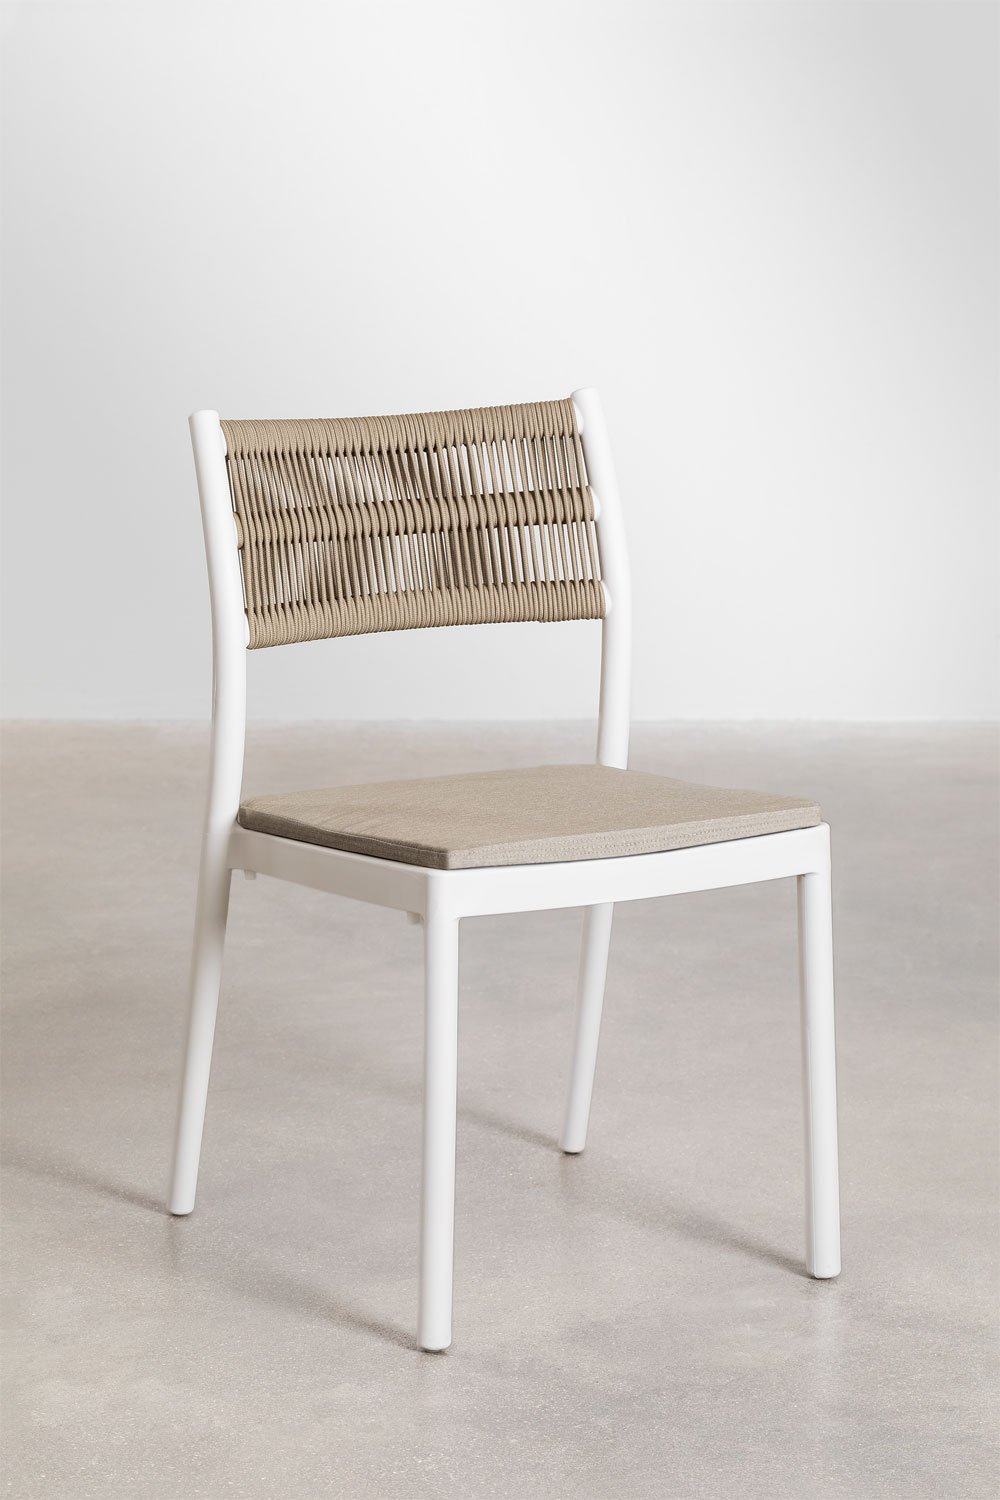 Confezione da 4 sedie da pranzo impilabili Favila, immagine della galleria 1